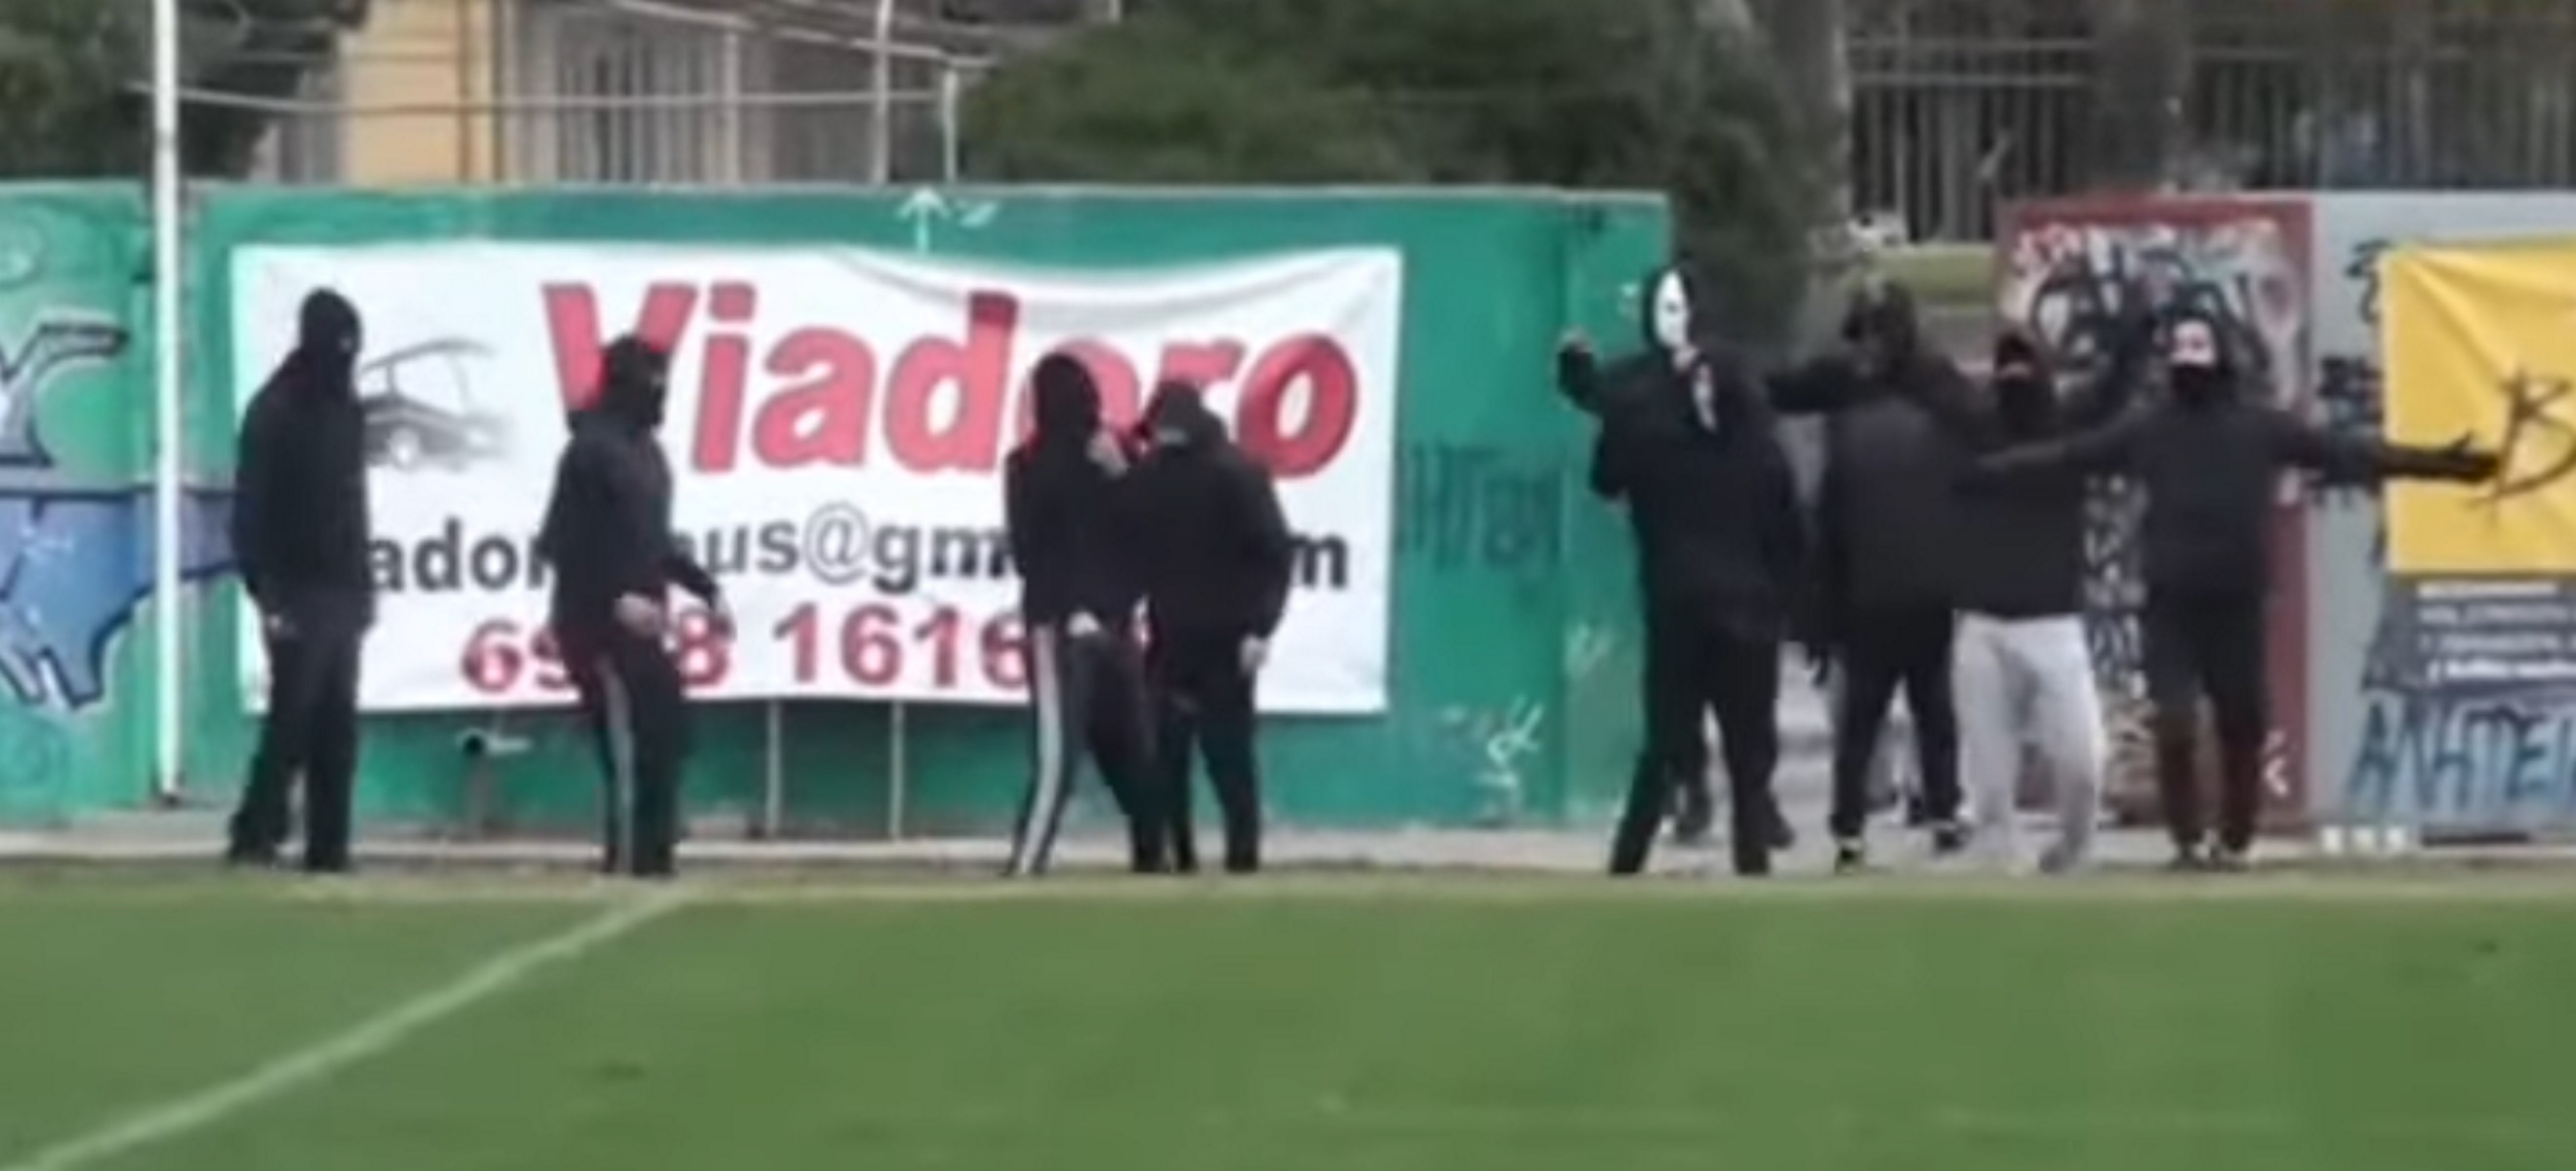 Εισβολή κουκουλοφόρων σε ποδοσφαιρικό αγώνα Τοπικού στη Μακεδονία! [video]